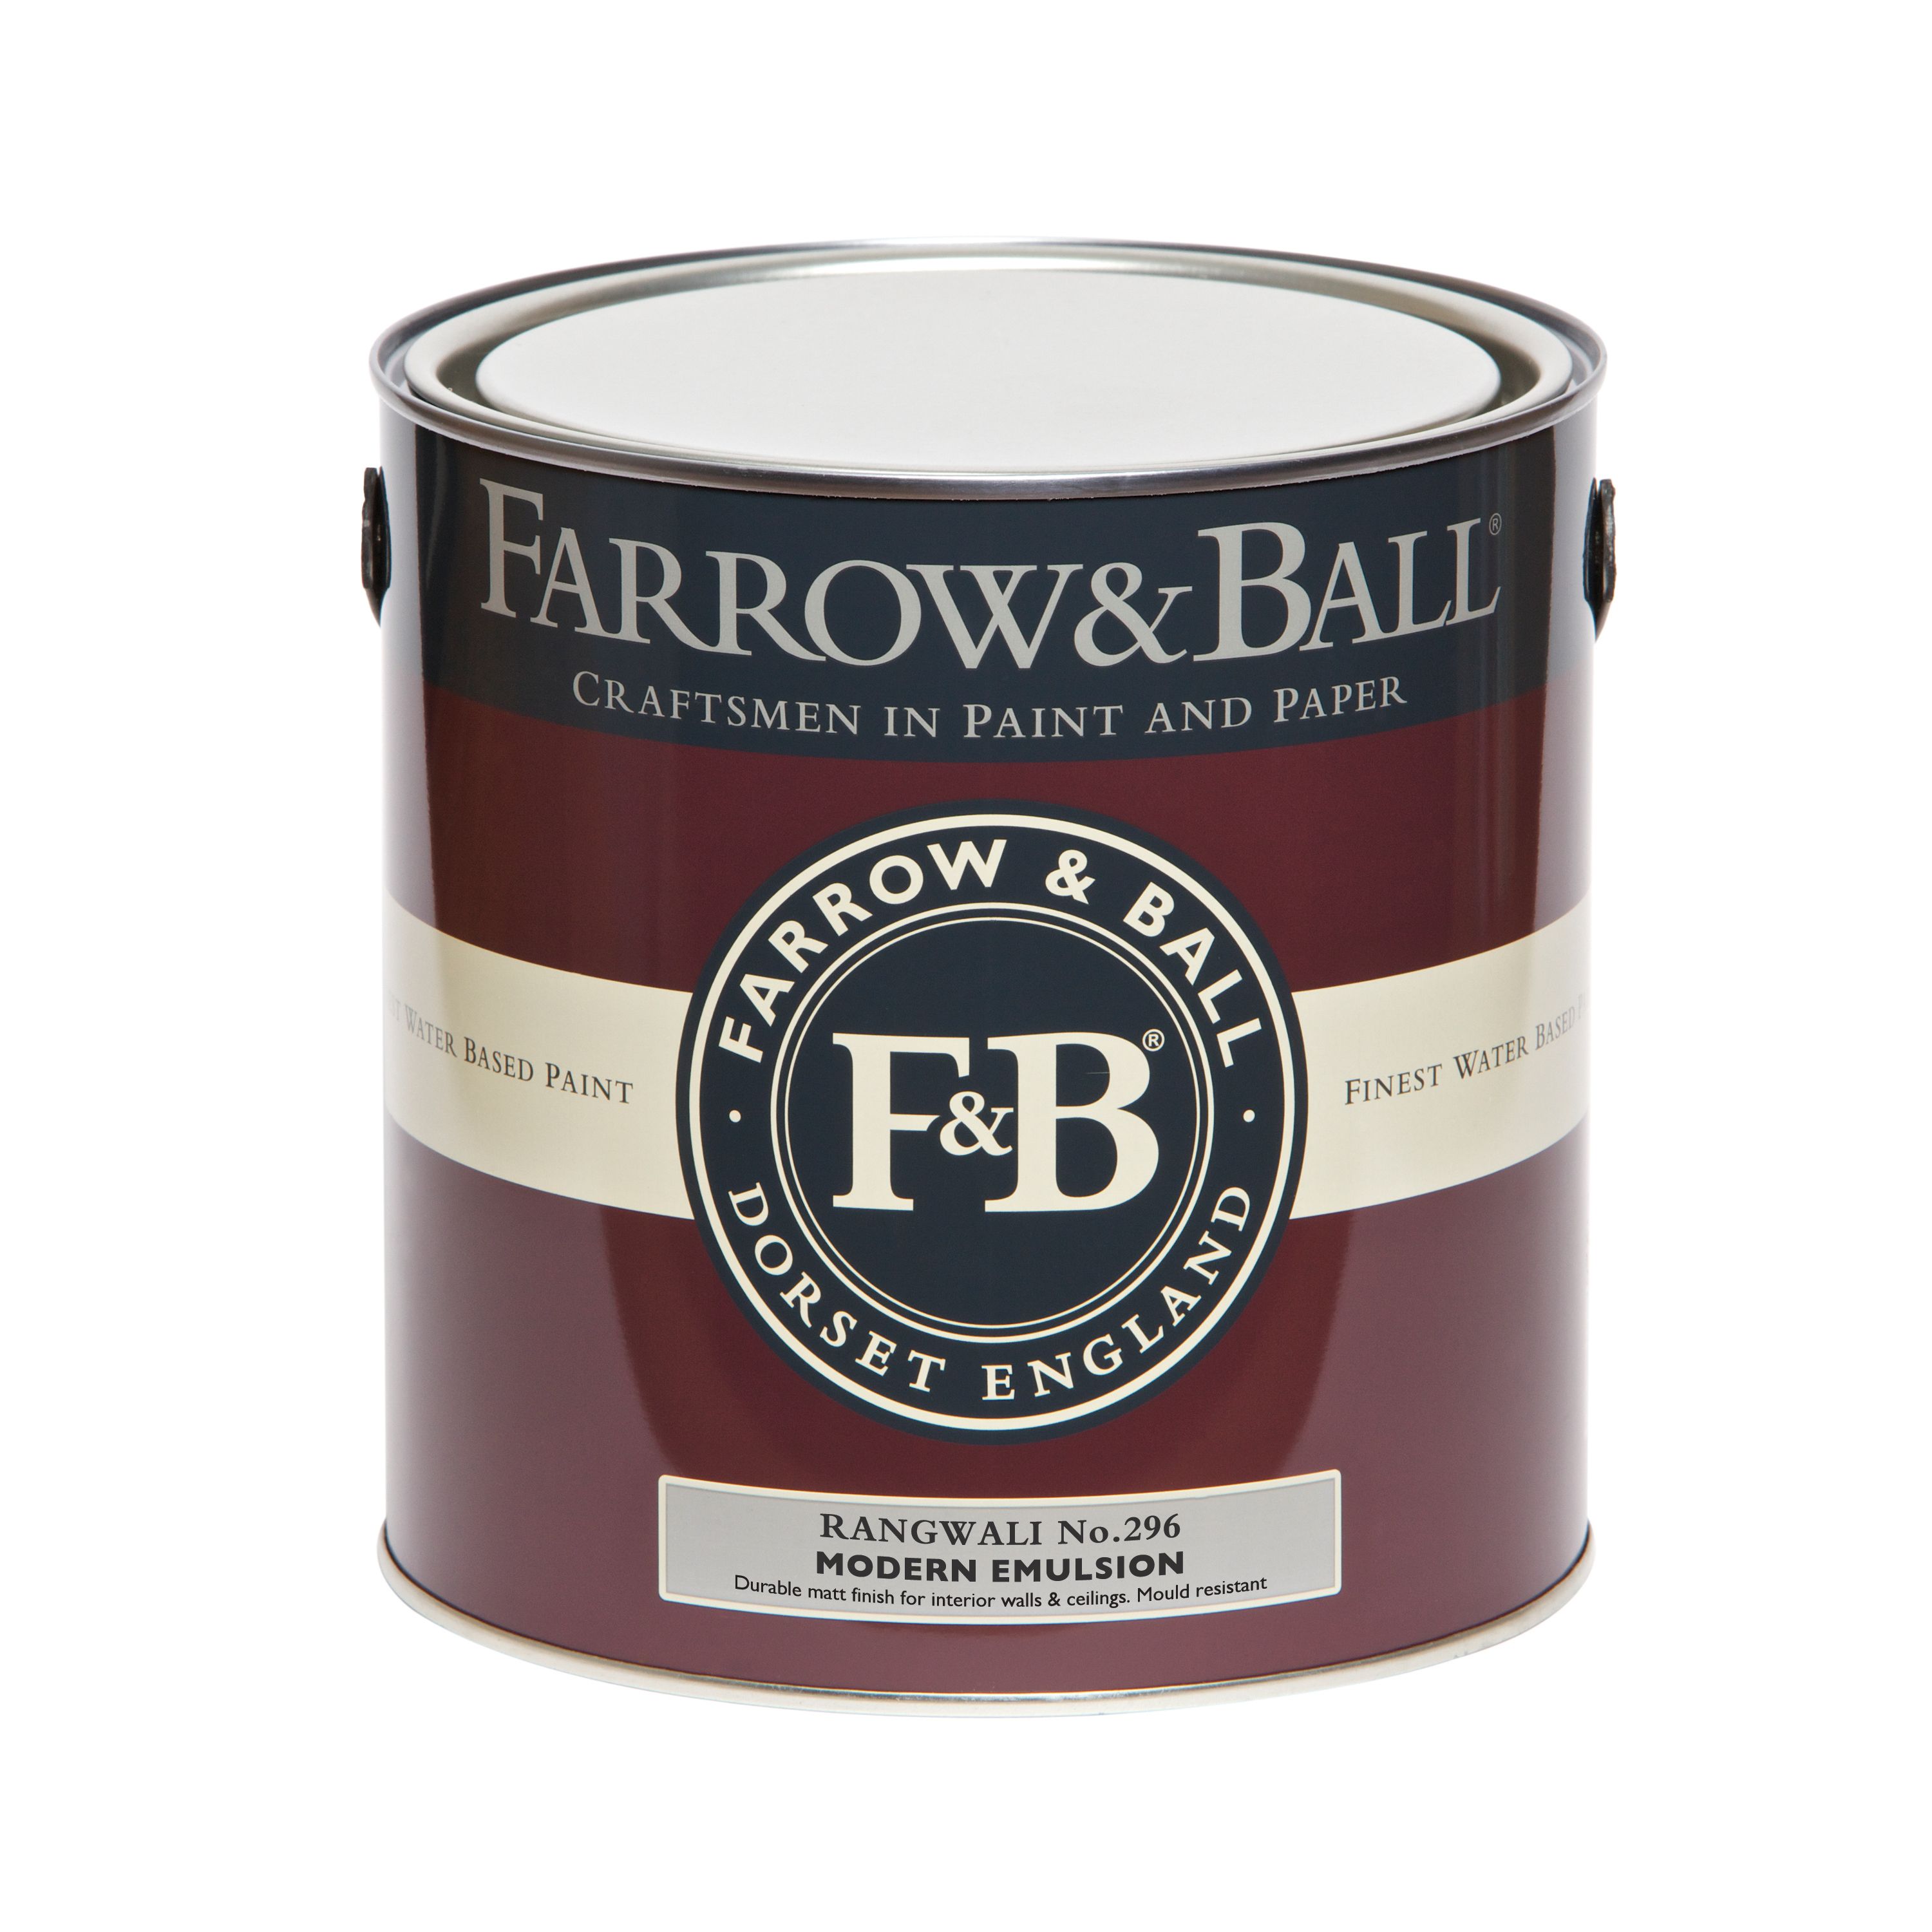 Farrow & Ball Modern Rangwali No.296 Matt Emulsion paint, 2.5L